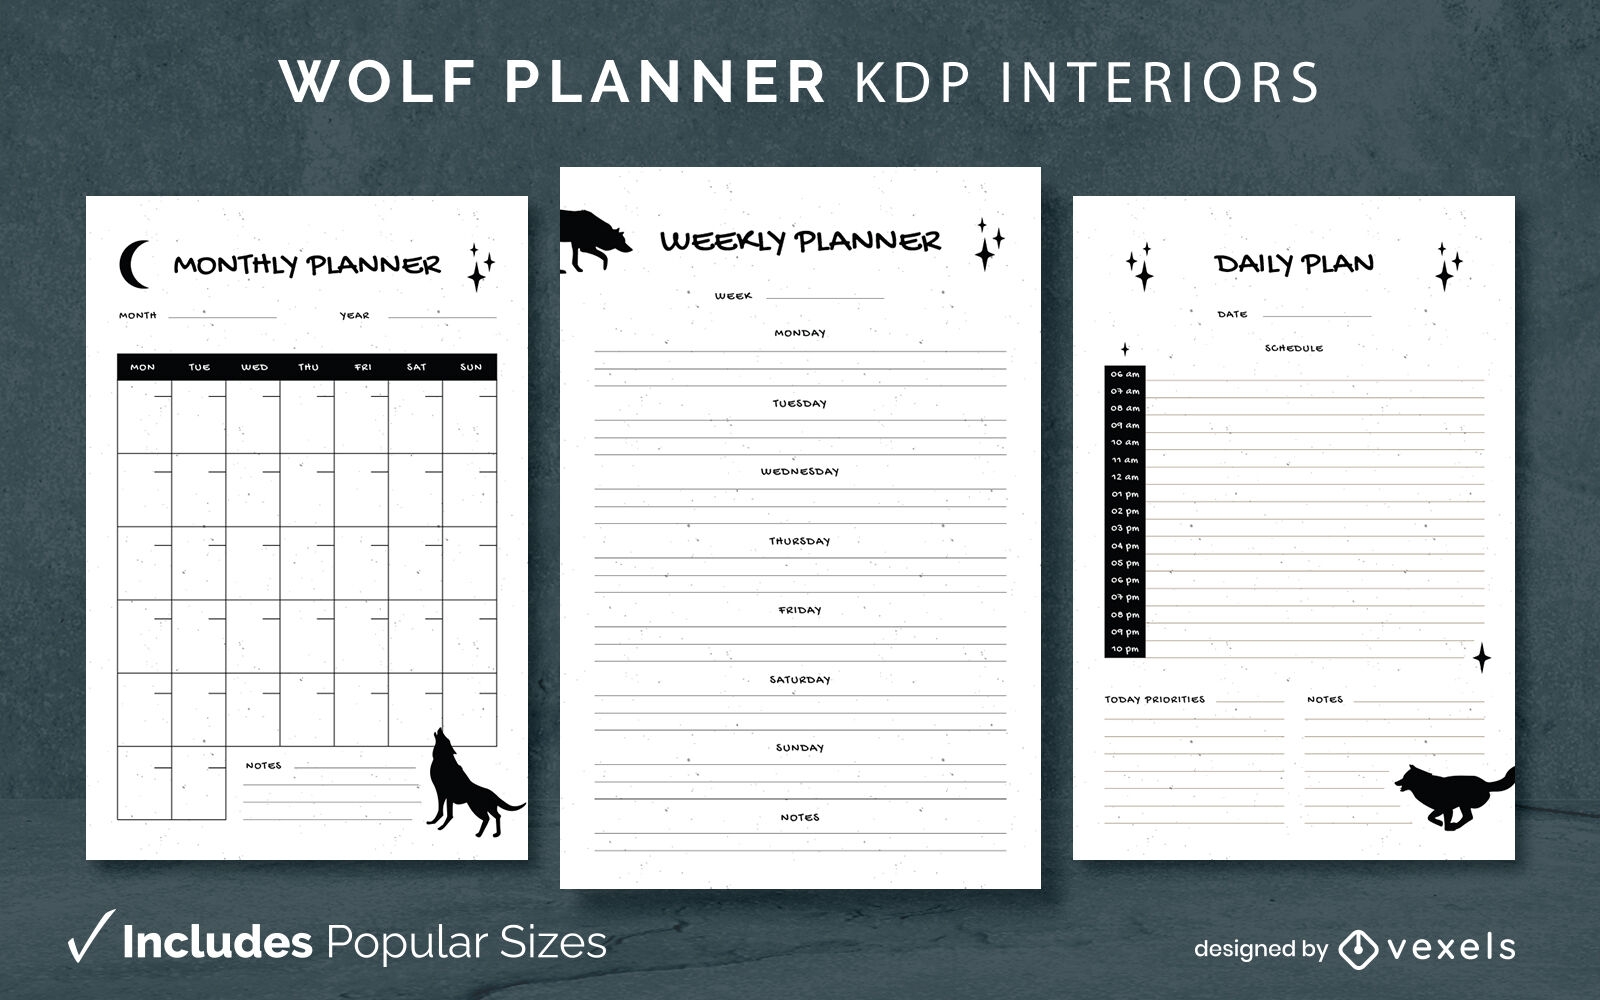 Plantilla de diseño de diario de planificador de lobos KDP